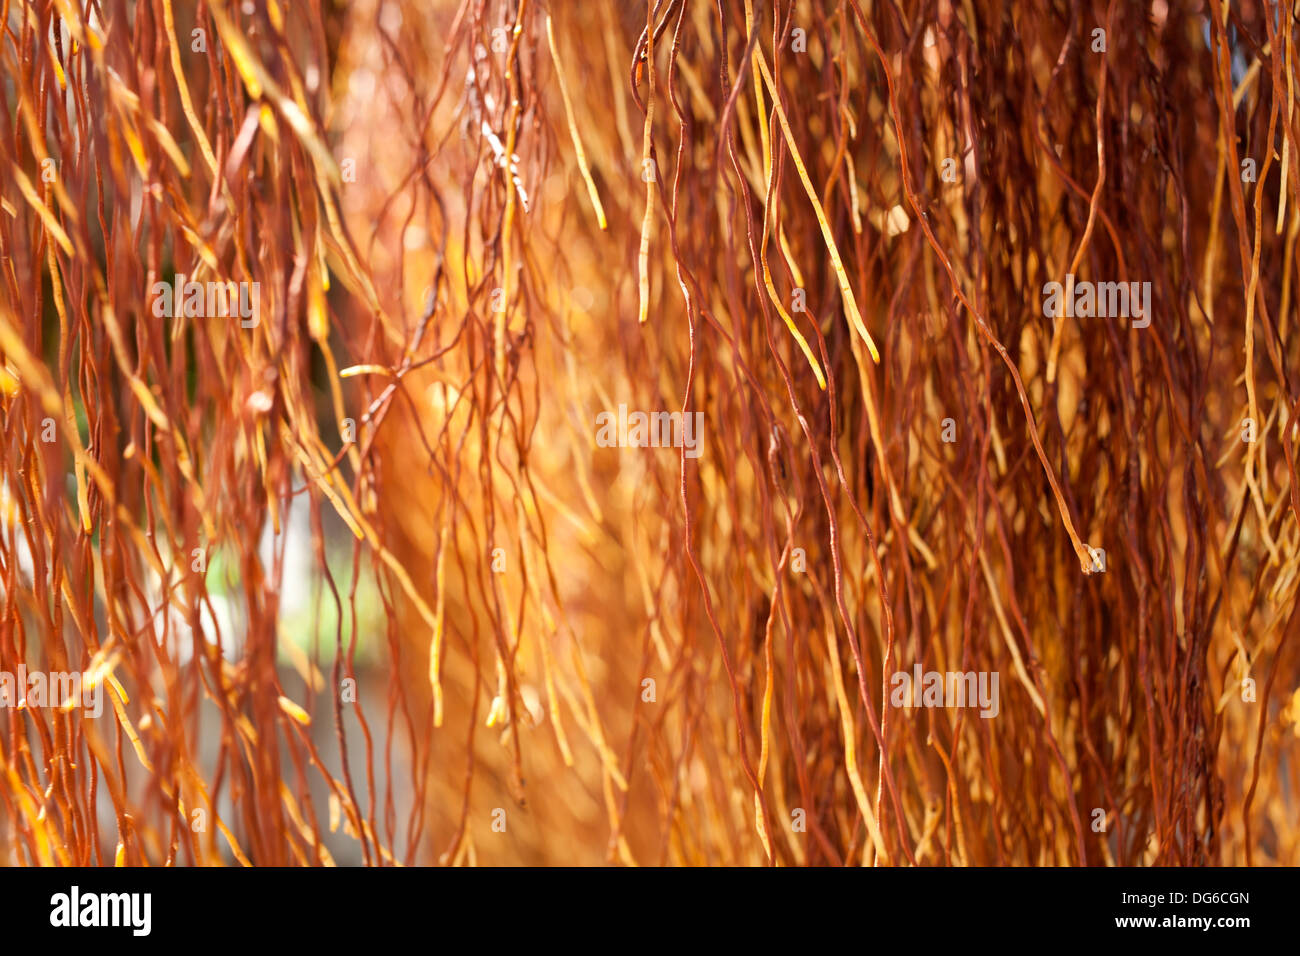 Radici di aria, marrone giallo aria radice del banyan tree texture Foto Stock